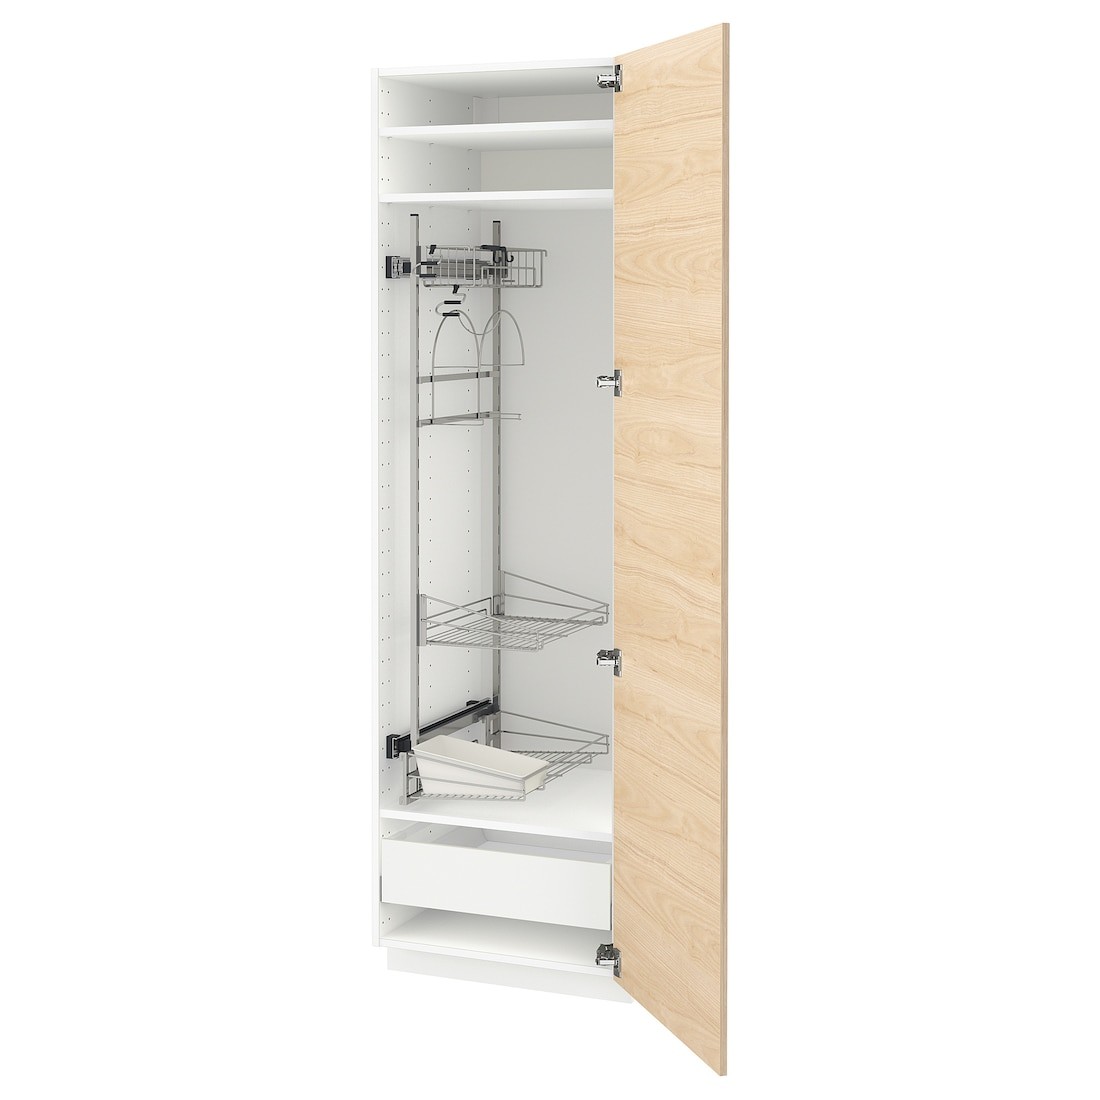 IKEA METOD МЕТОД / MAXIMERA МАКСИМЕРА Высокий шкаф с отделением для аксессуаров для уборки, белый / Askersund узор светлый ясень, 60x60x200 см 89373794 | 893.737.94